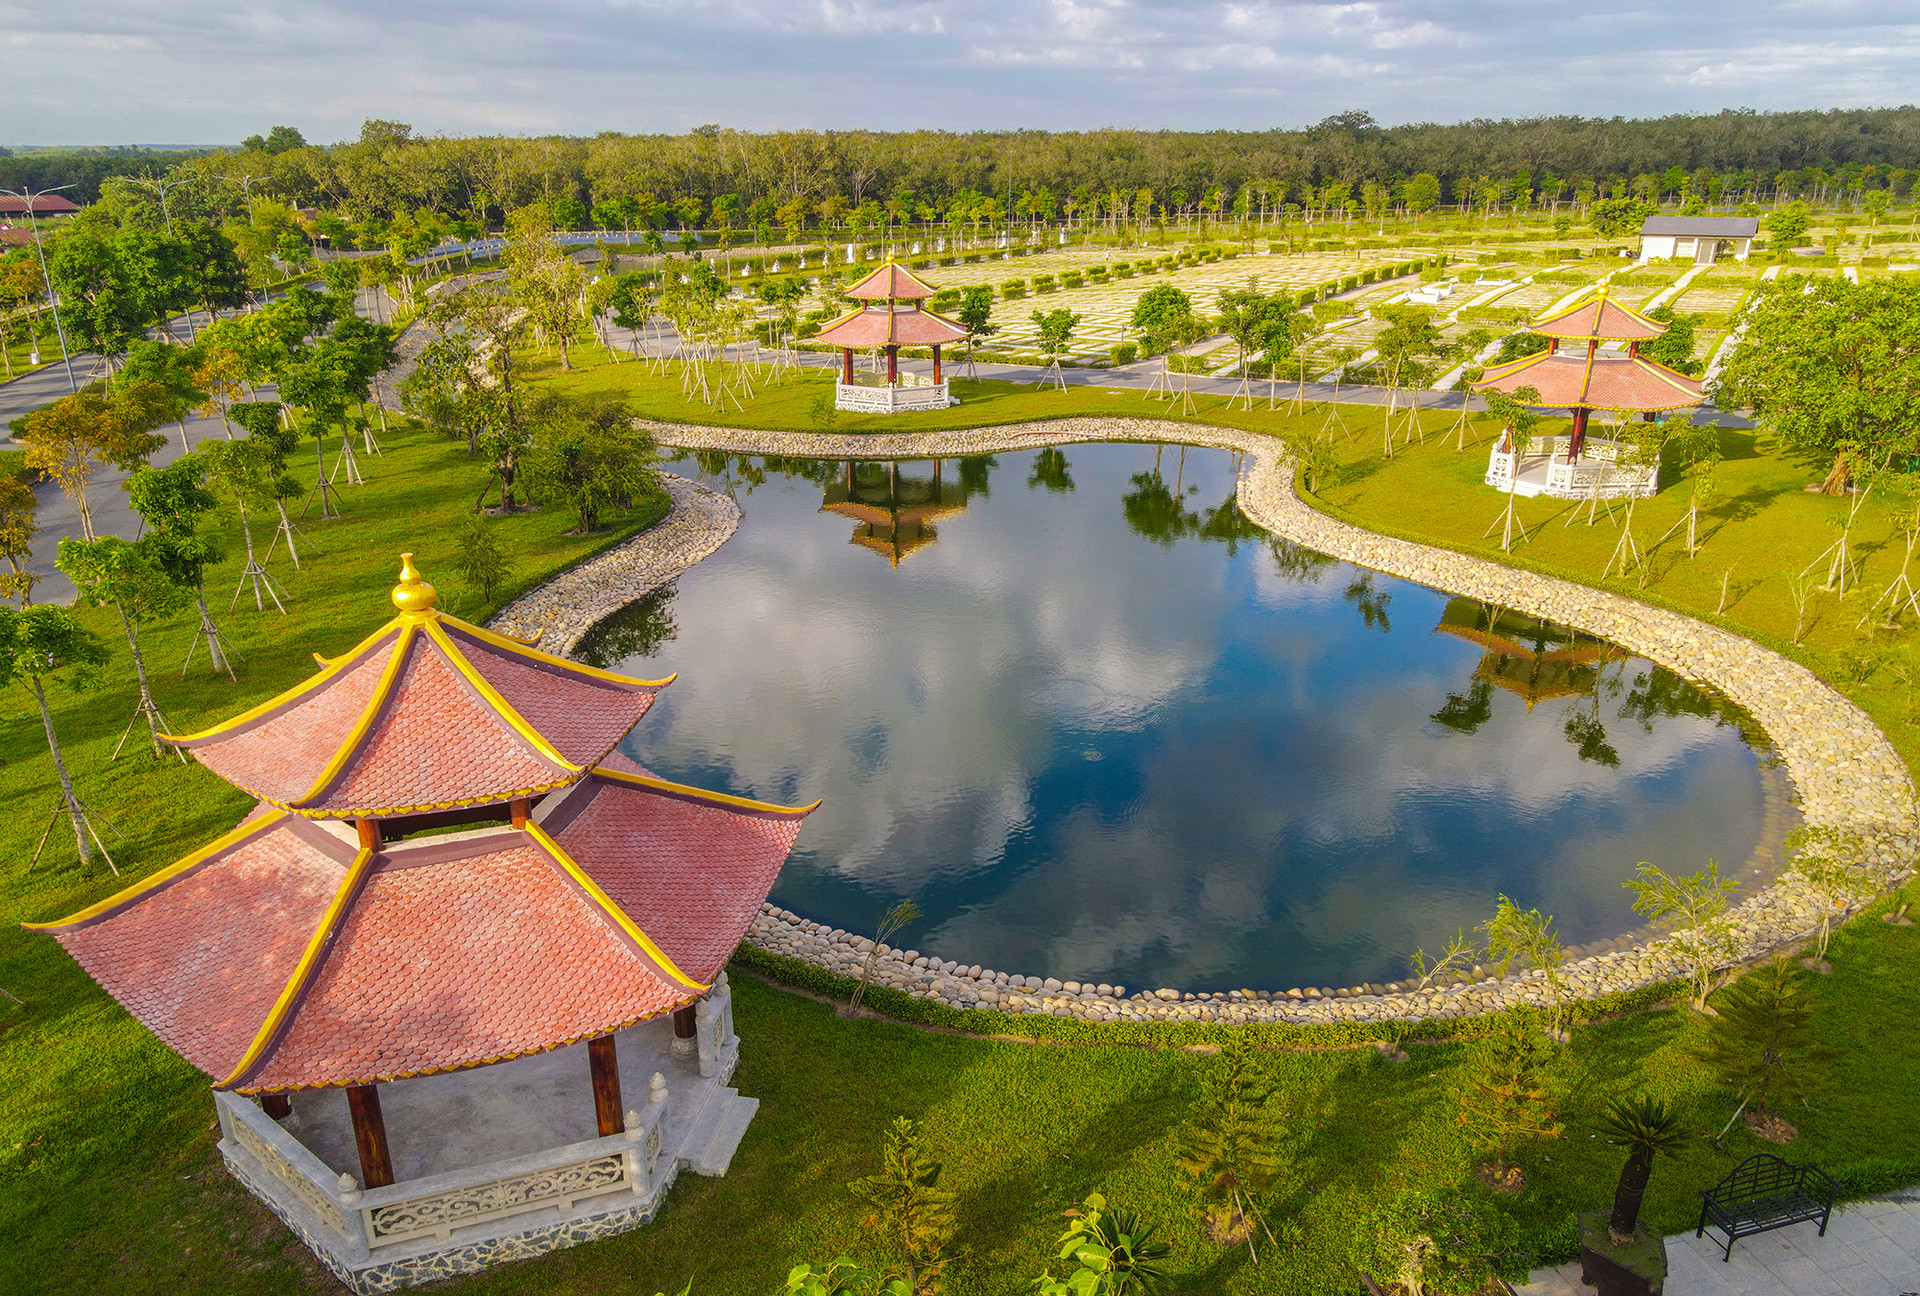 Sala Garden - dự án hoa viên nghĩa trang nằm tại xã Tân Hiệp, huyện Long Thành (Đồng Nai), có diện tích hơn 50 ha, tổng vốn đầu tư hơn 2.000 tỷ đồng. Dự án nằm trong một vành đai tâm linh với khoảng 60 ngôi chùa, thiền viện, giáo xứ gần đó.